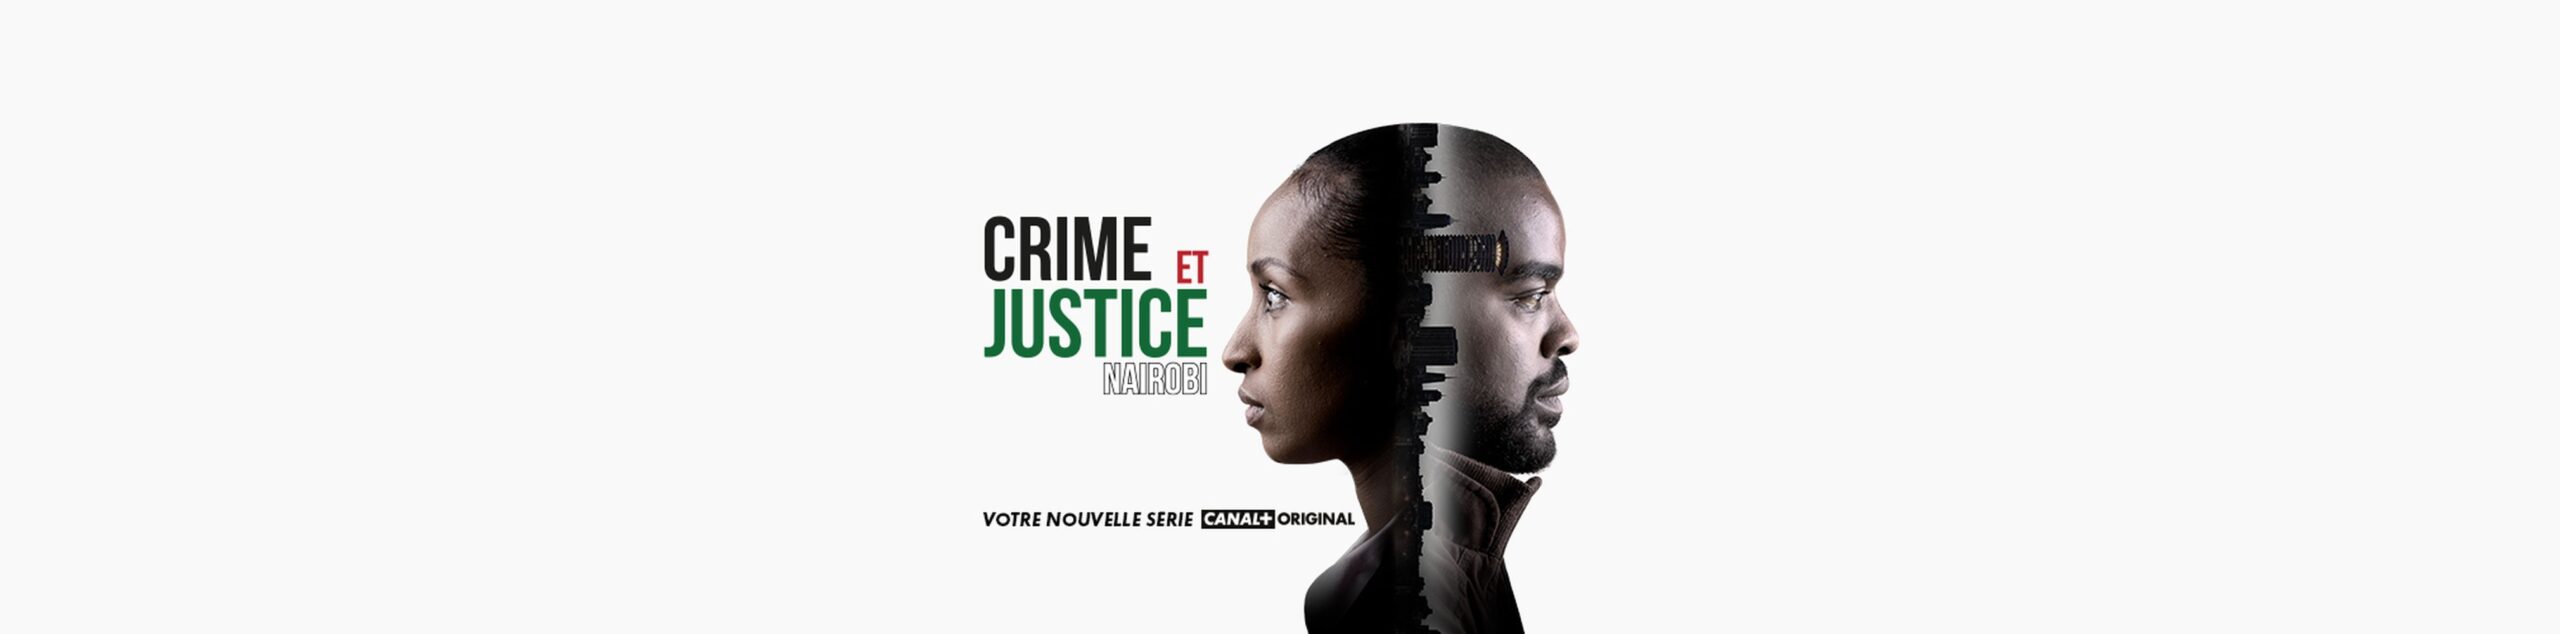 « Crime et Justice Nairobi » : la nouvelle série Canal+ Original